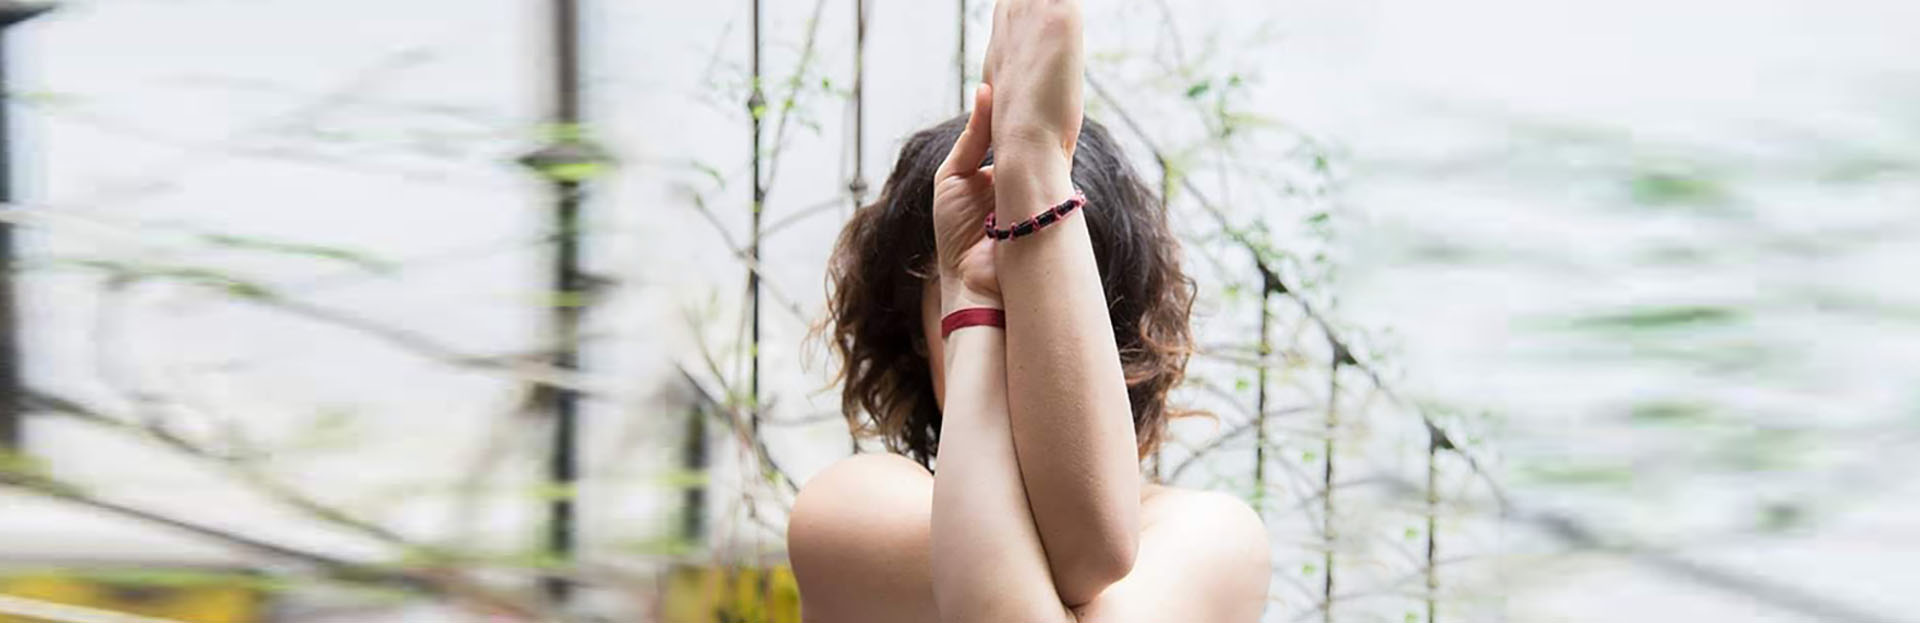 Yoga. Flexibilidad, fuerza y funcionalidad